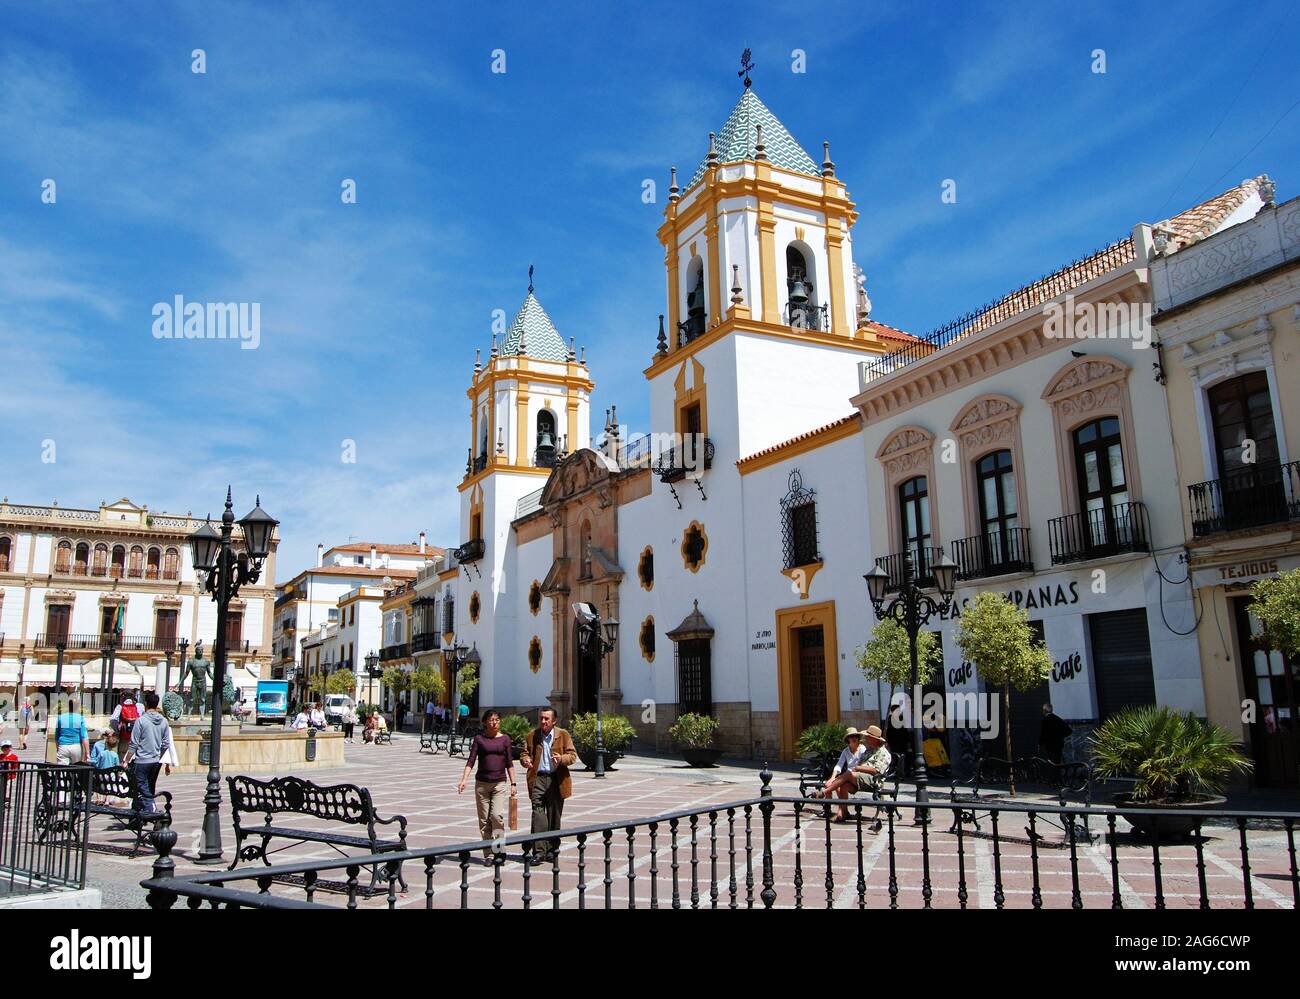 View of the Socorro Parish church in the Plaza del Socorro, Ronda, Malaga Province, Andalucia, Spain, Europe. Stock Photo